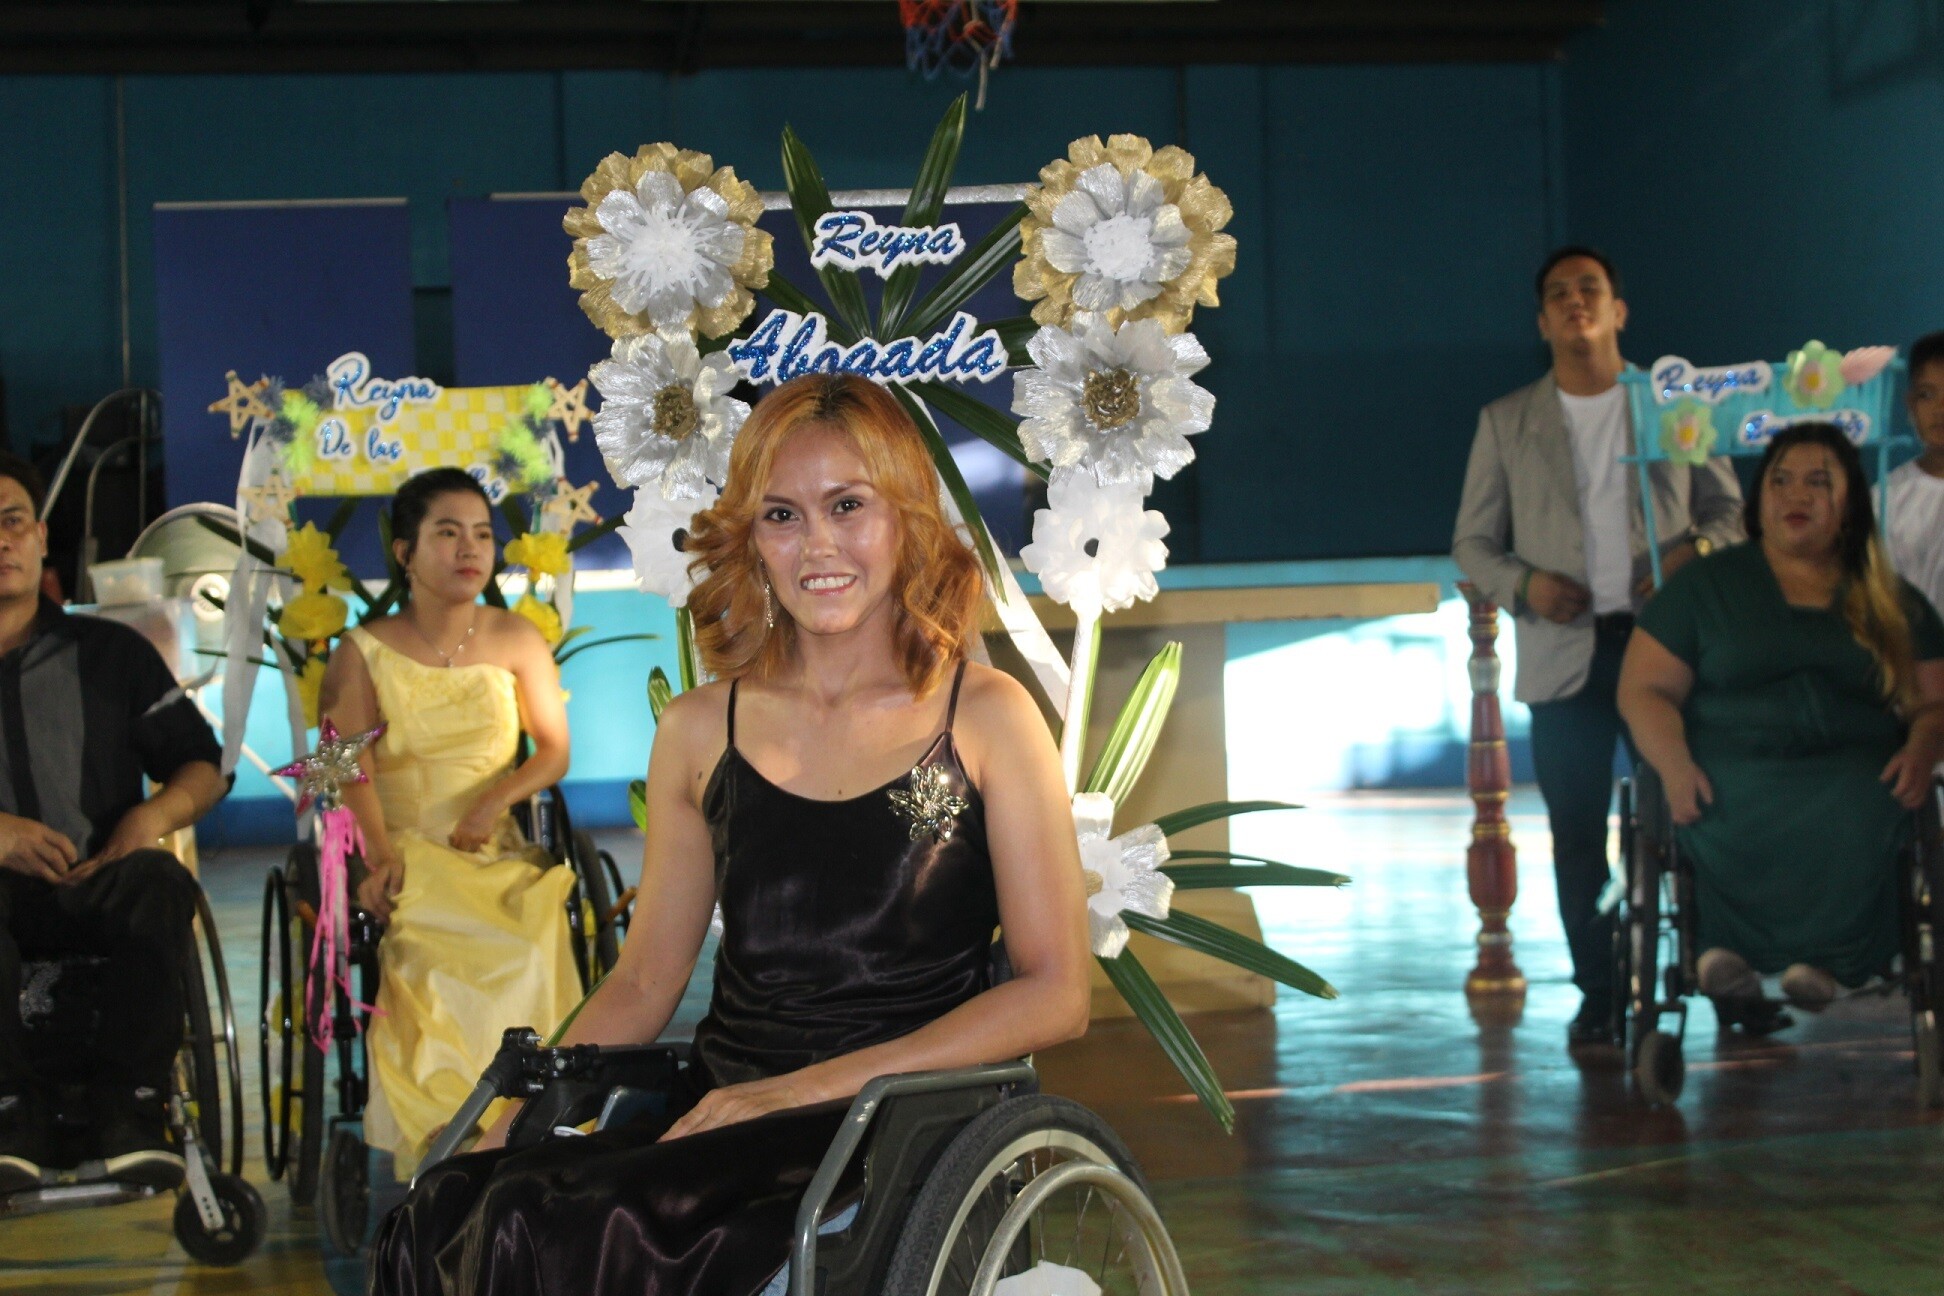 Jobelle lors d’une fête, en robe noire avec les cheveux teints en roux. Son fauteuil roulant est décoré de fleurs. On aperçoit au second plan d’autres utilisateurs de fauteuils roulants.